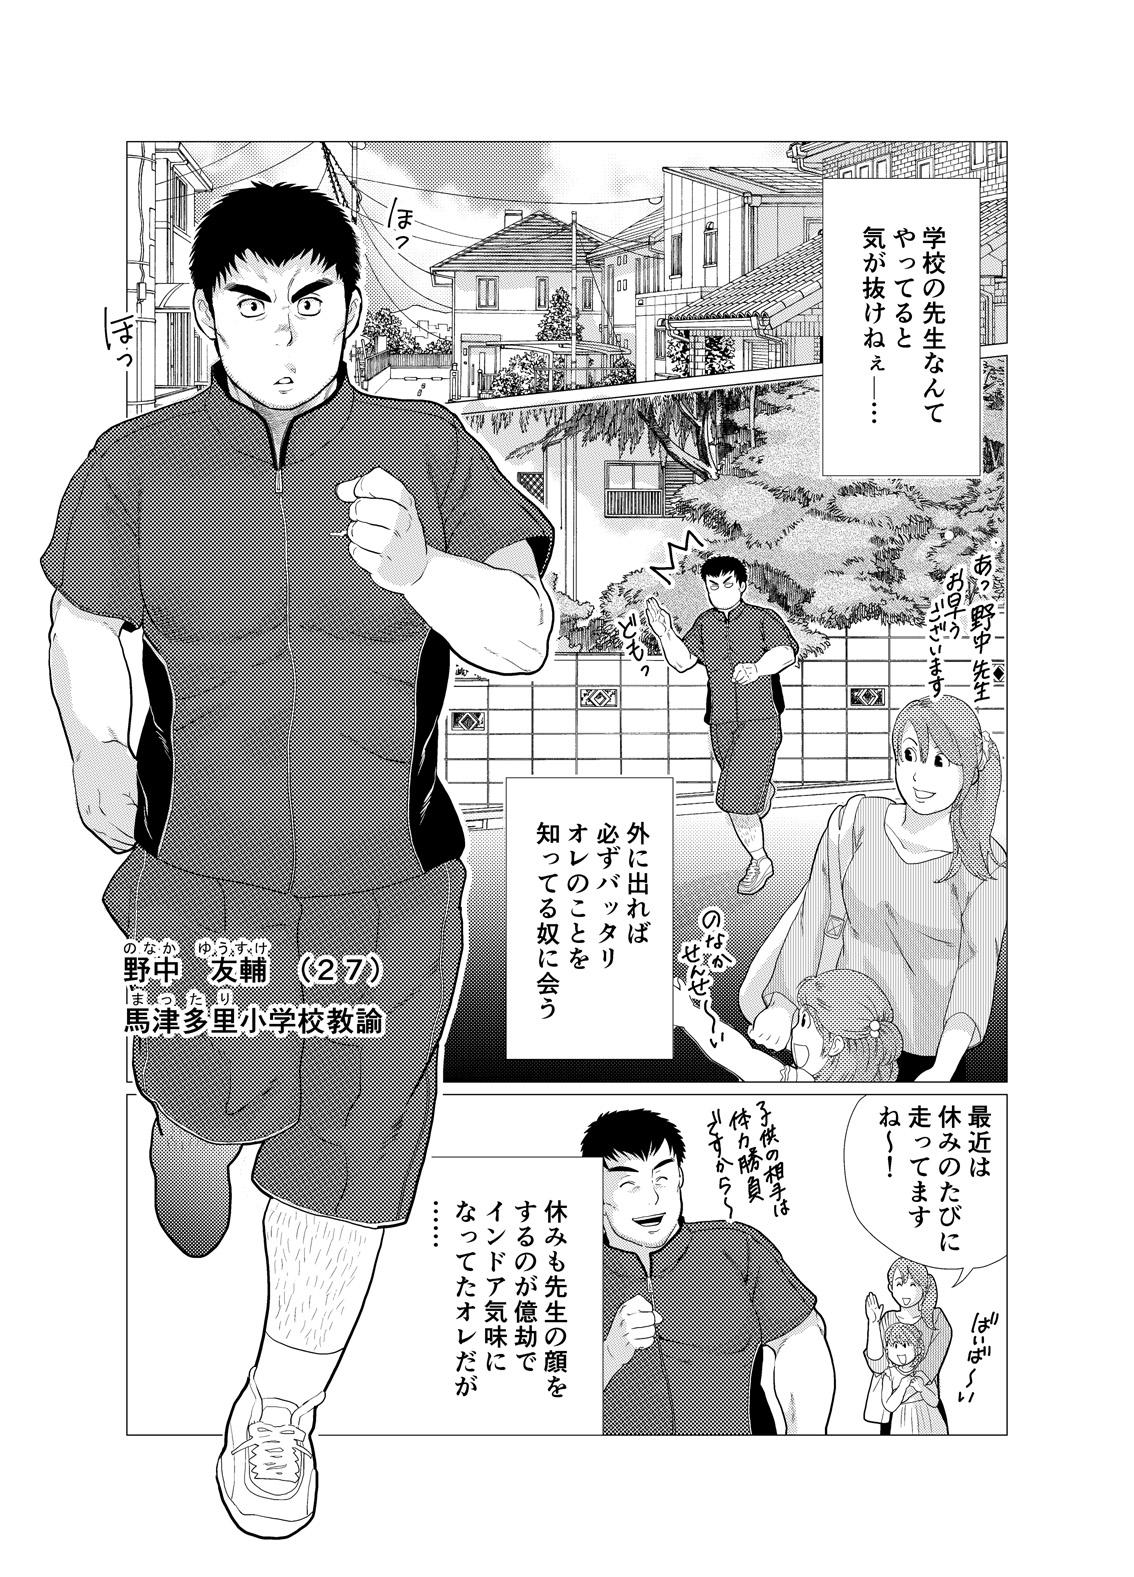 Suck Ikenai desu! Nonaka-sensei - Original Teamskeet - Page 3